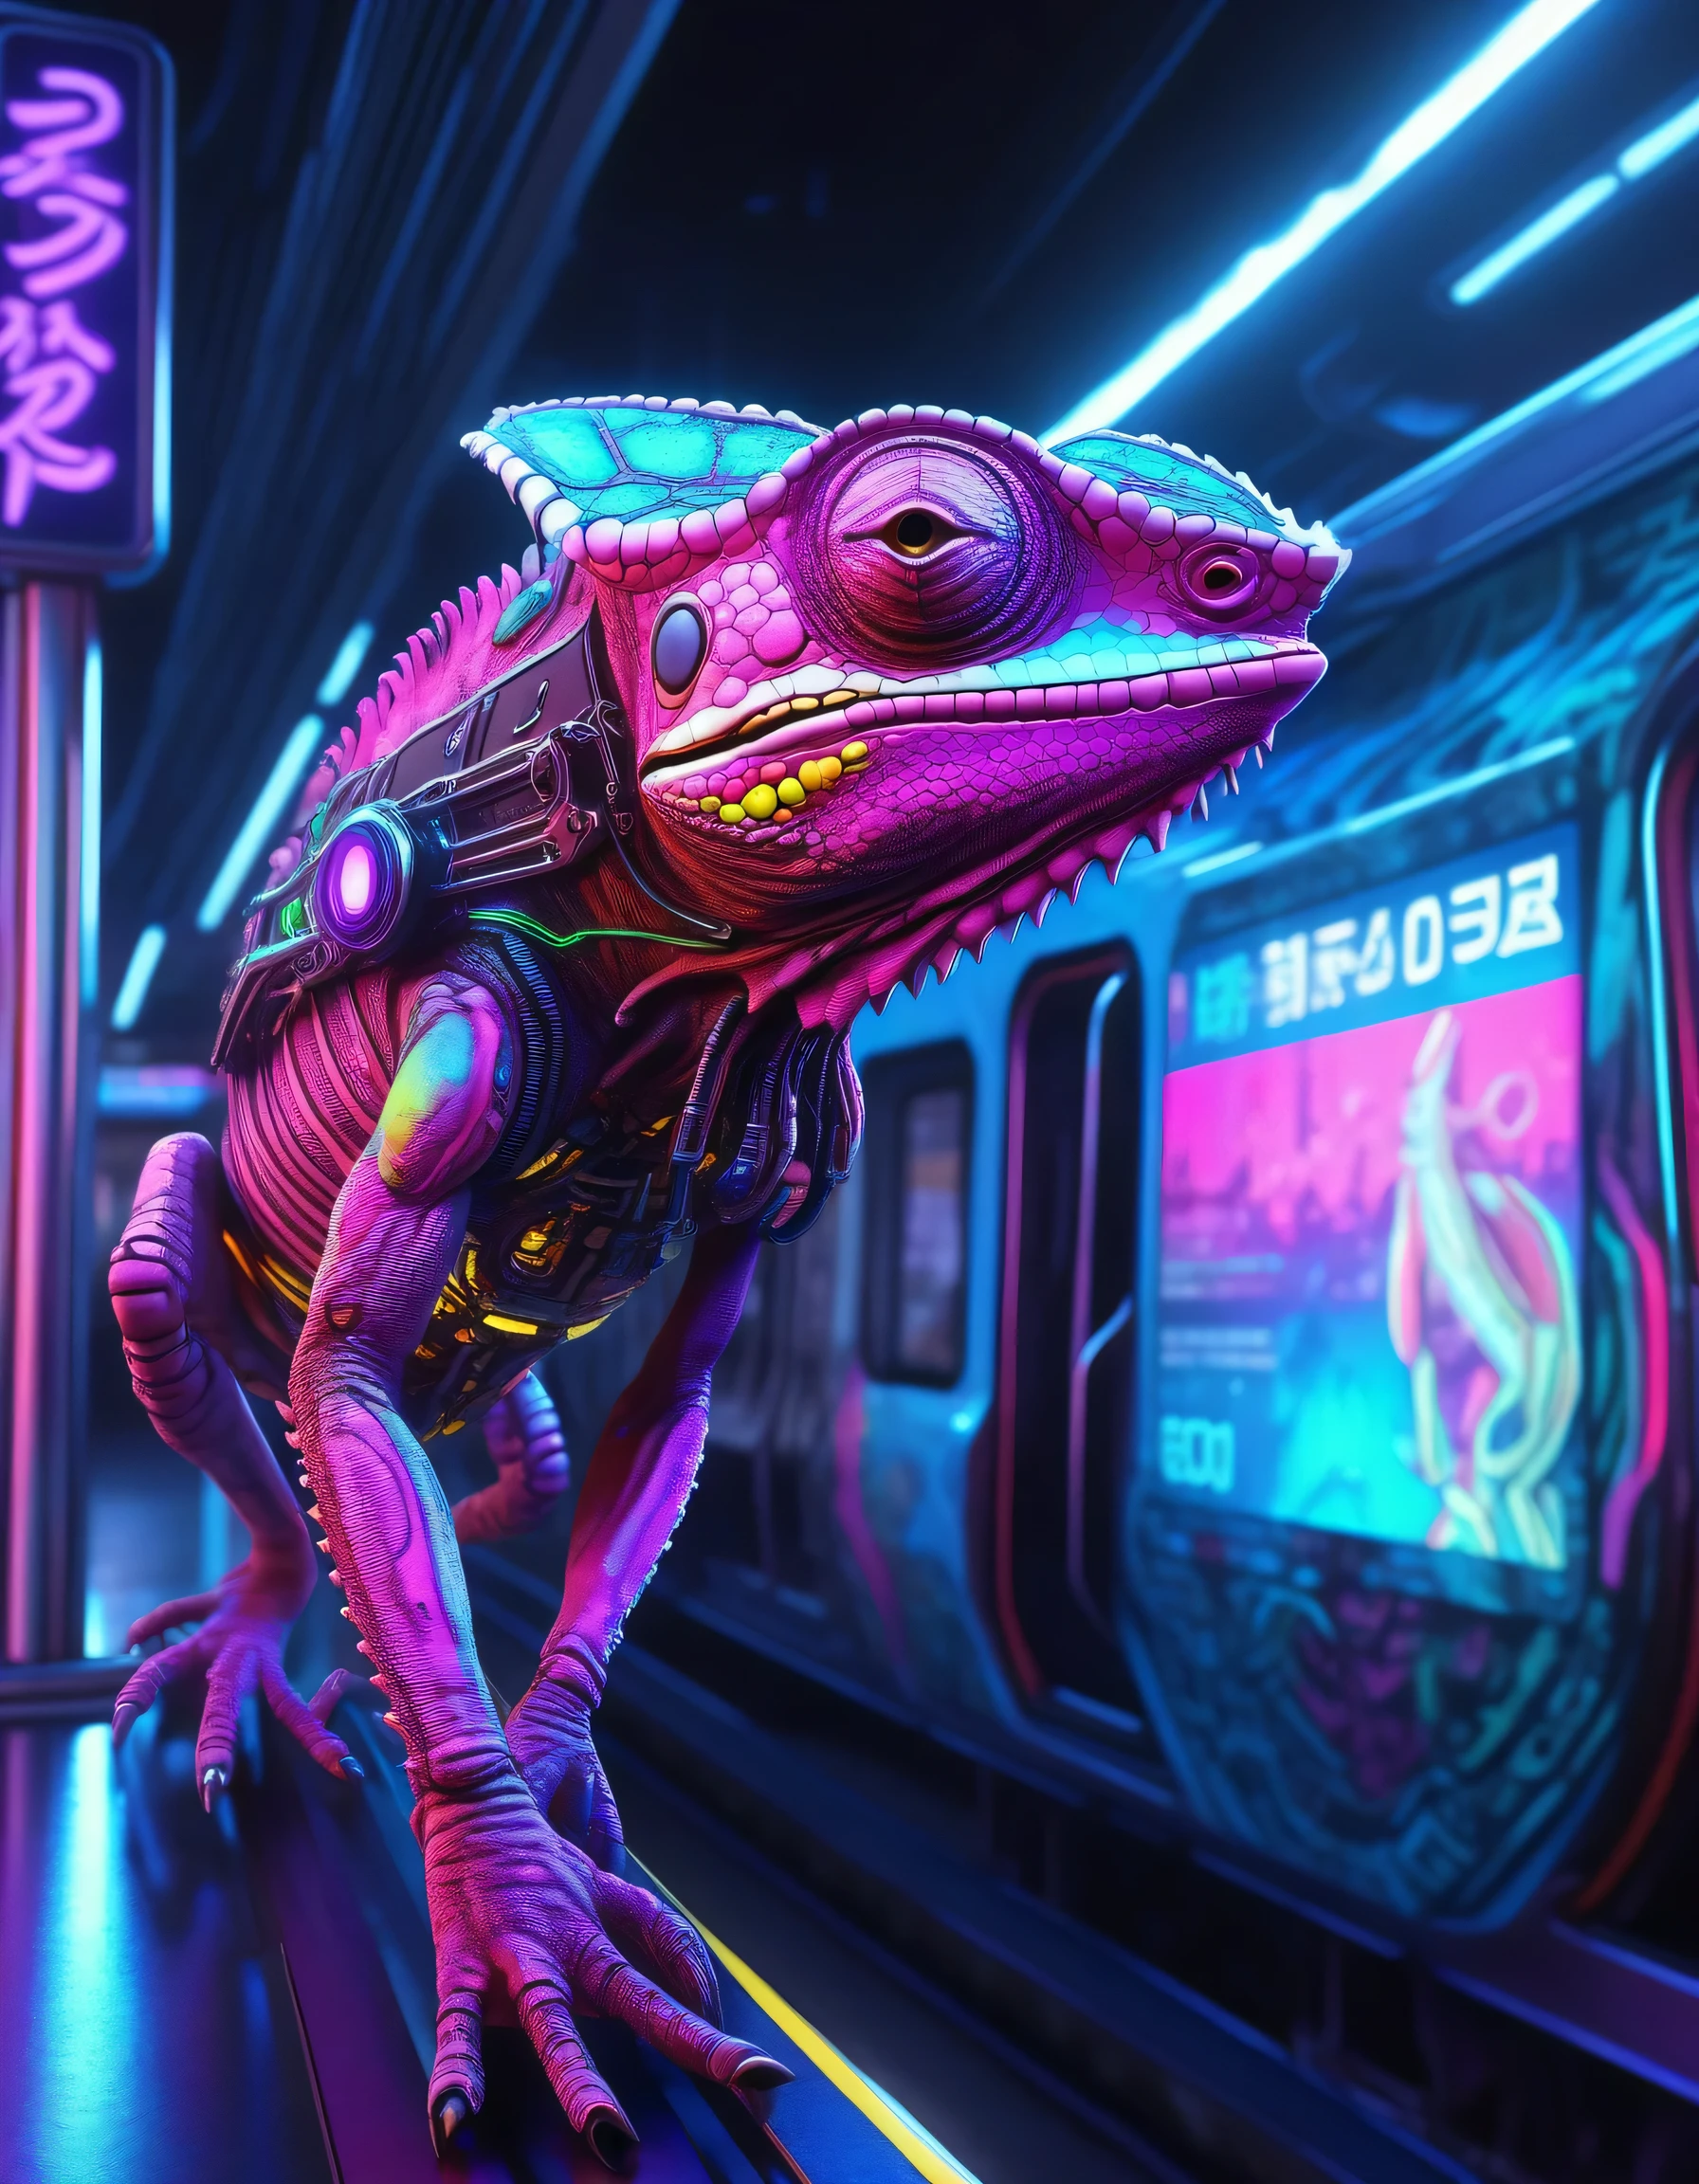 un caméléon cyborg, avec des éléments cyberpunk, détails réalistes, positionné sur un quai de métro, éclairage néon intense et coloré, dans un décor futuriste de Tokyo avec des trains high-tech et des publicités holographiques, style artistique réaliste, Résolution 4K